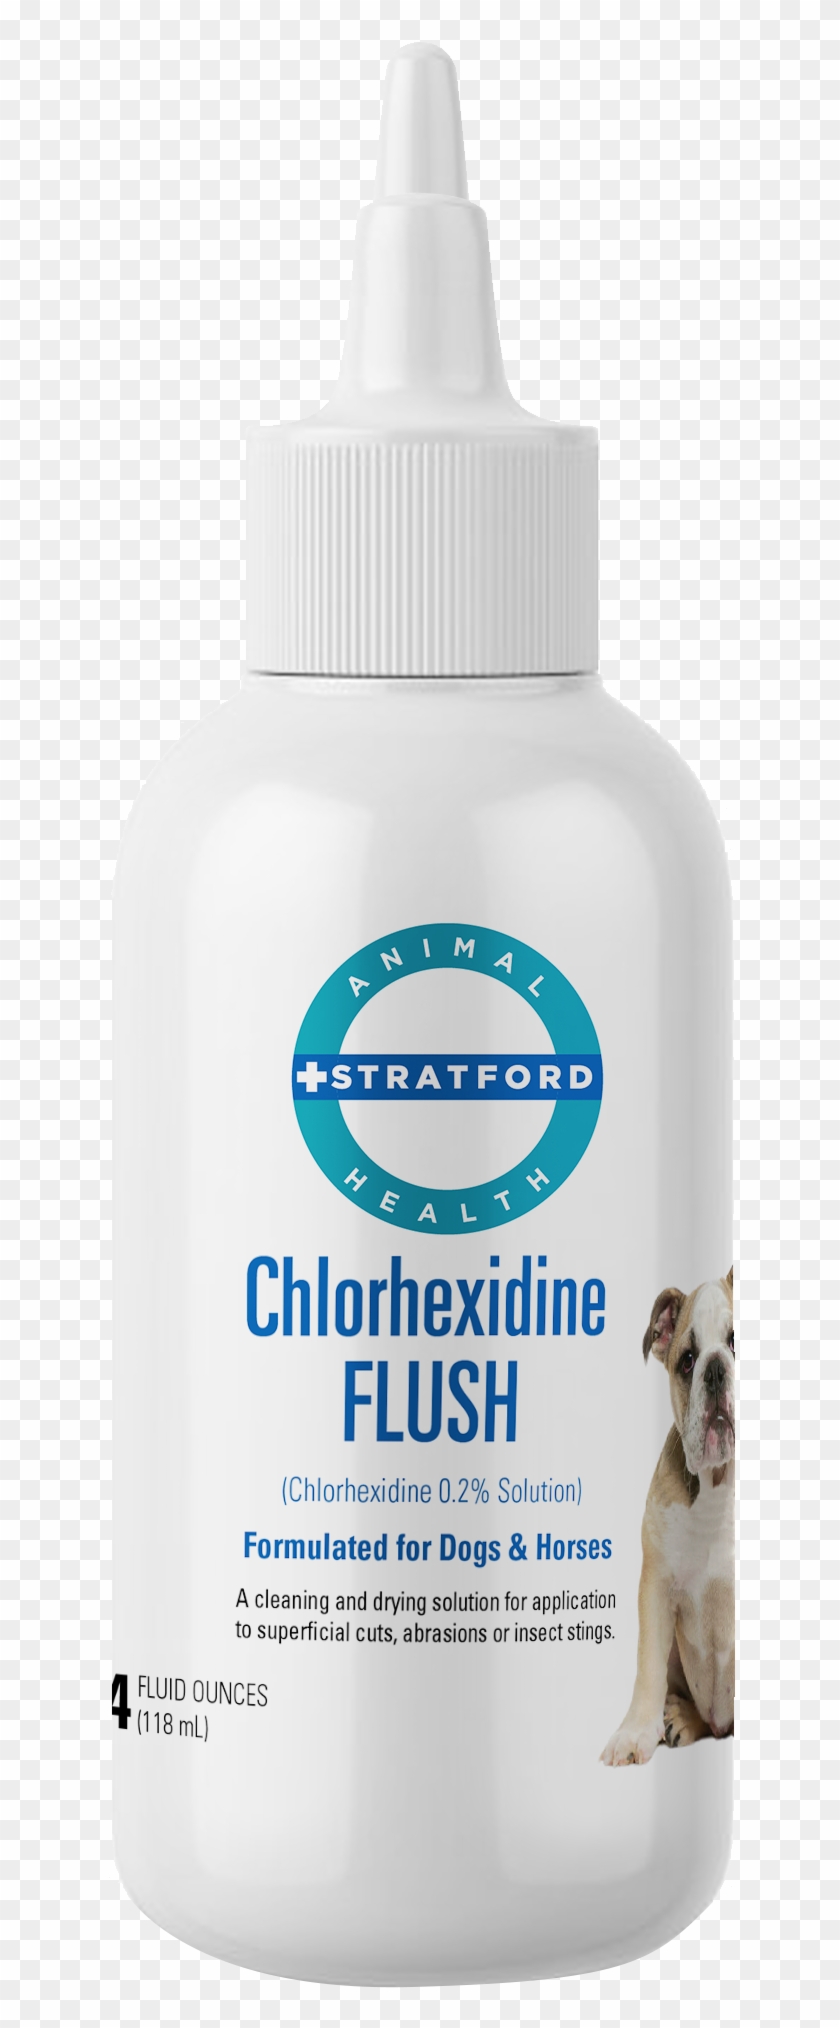 Chlorhexidine Flush - Hand Wash Bottle Premium Clipart #4724956